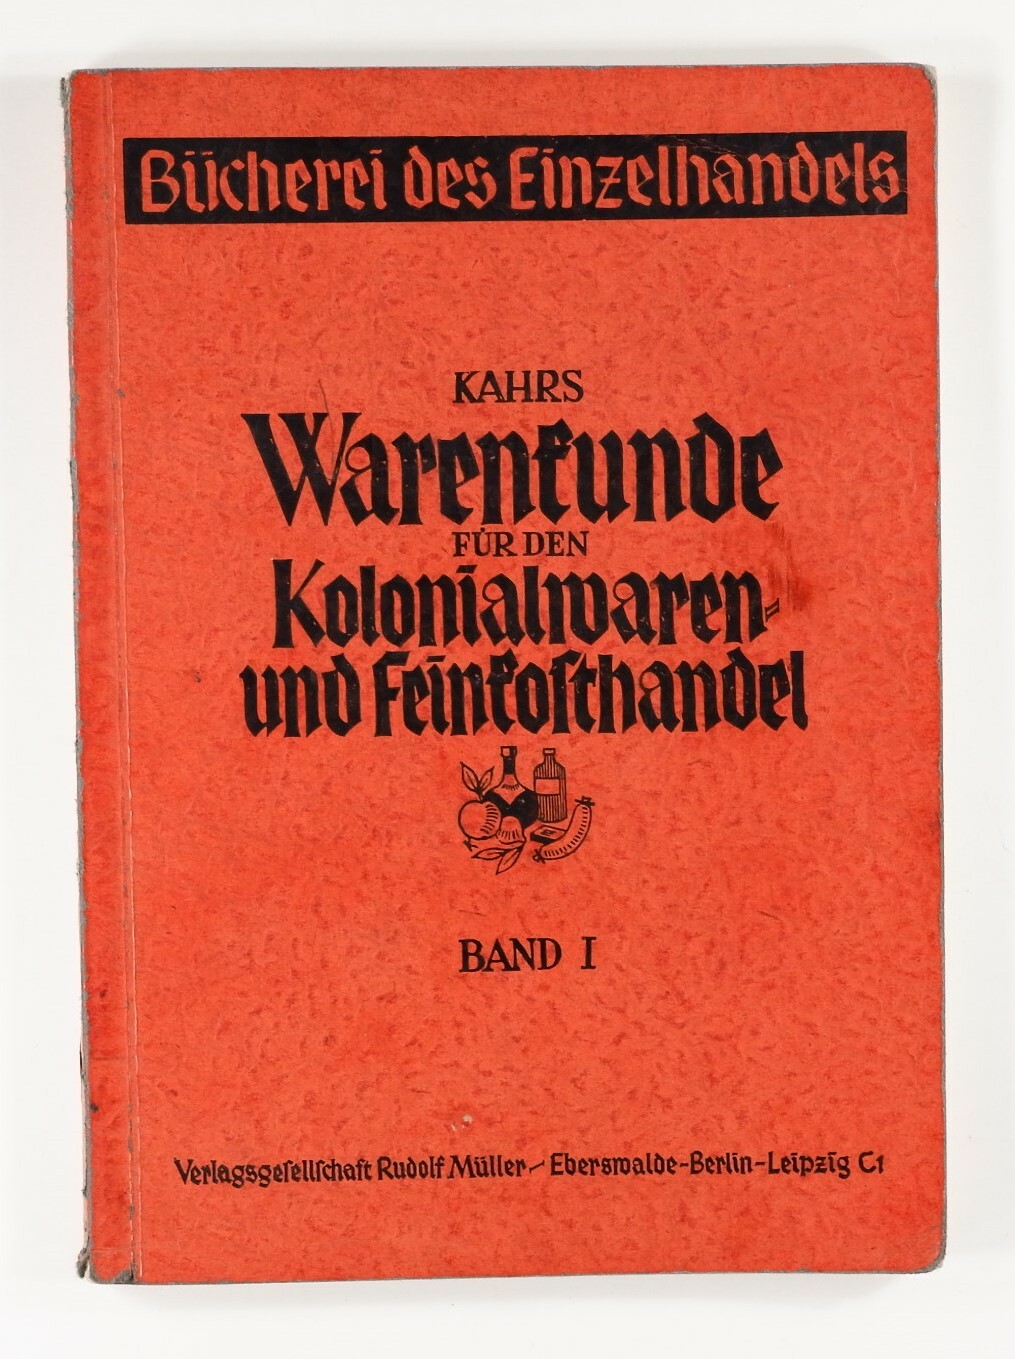 Warenkunde für den Kolonialwaren- und Feinkosthandel (Volkskunde- und Freilichtmuseum Roscheider Hof RR-F)